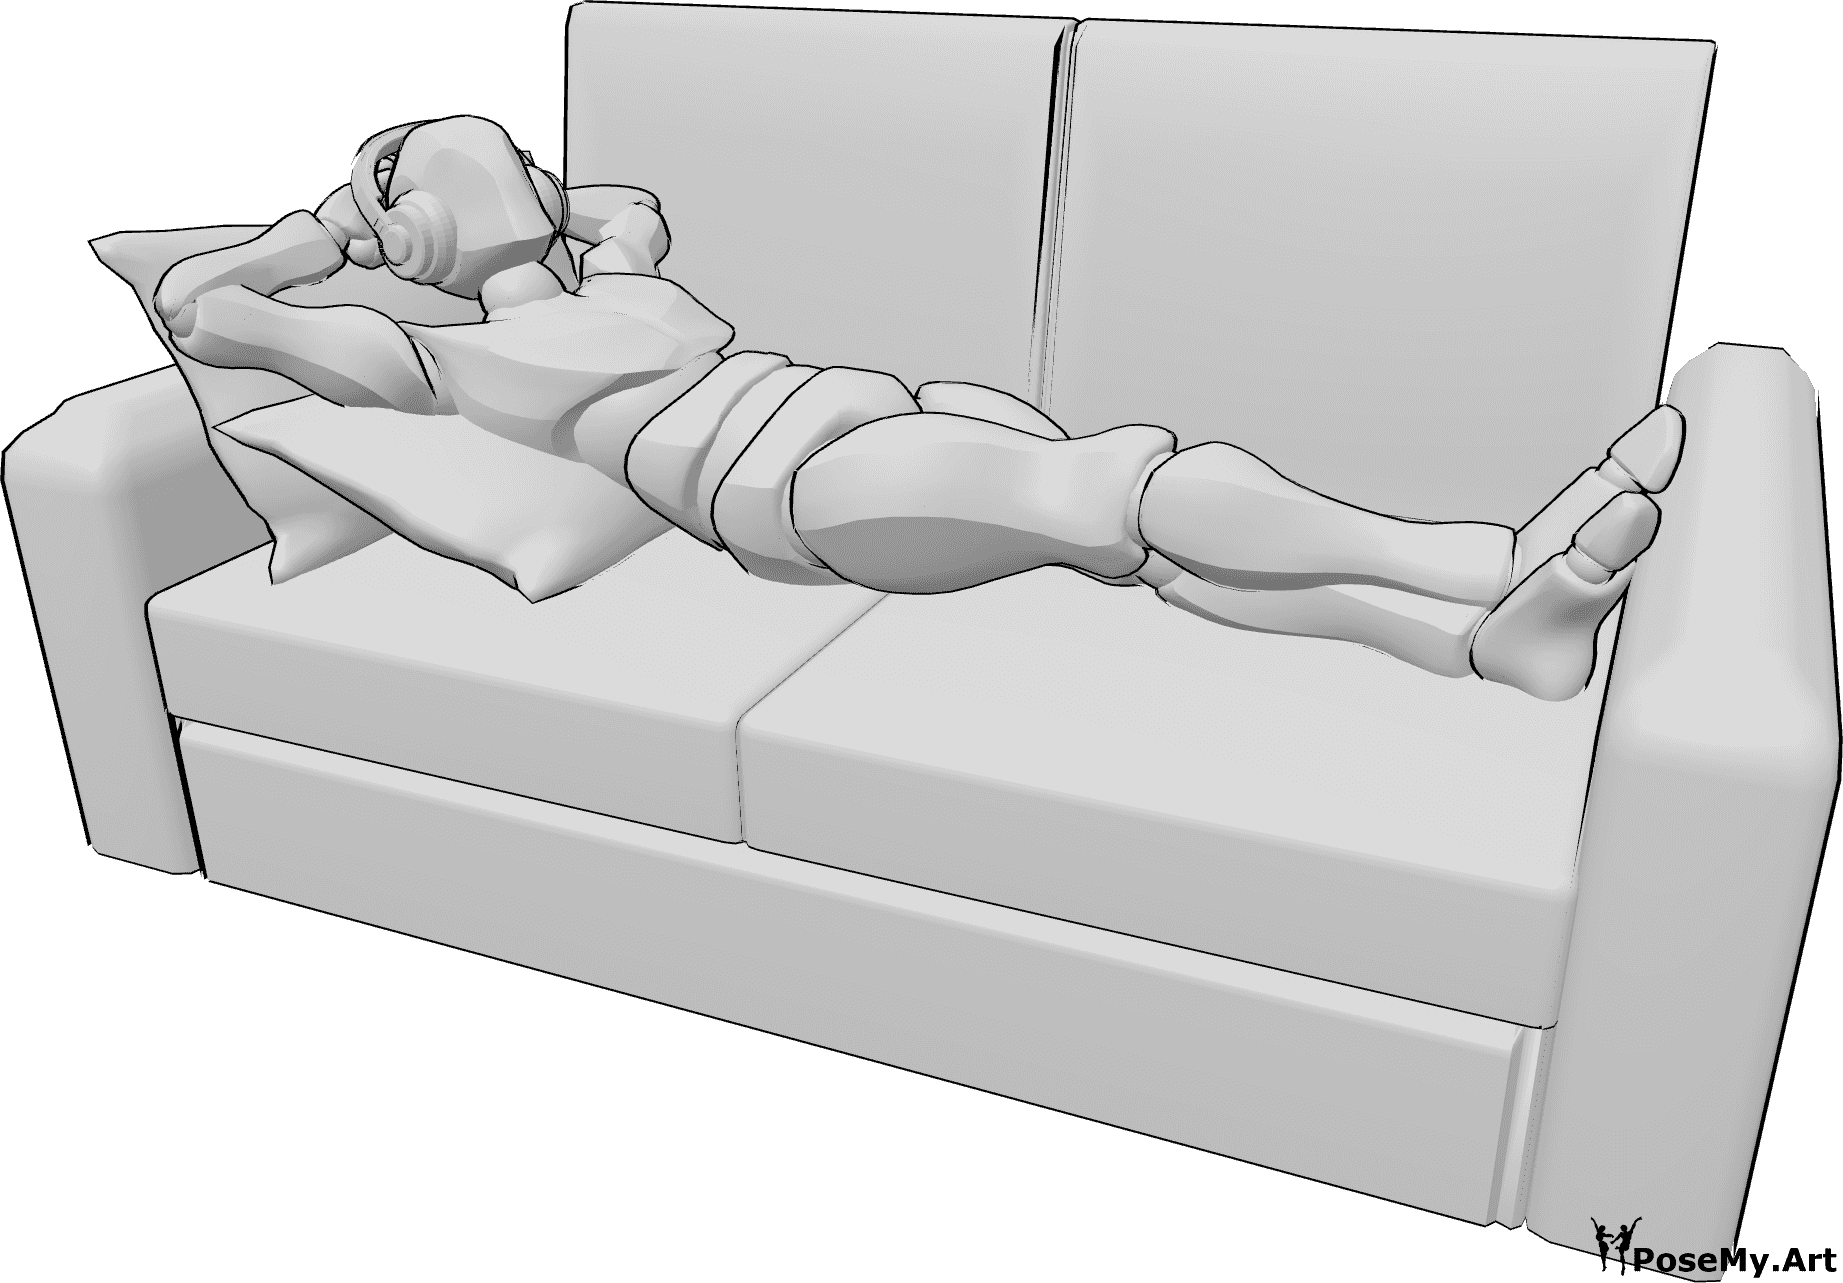 Référence des poses- Homme couché, pose du casque - L'homme est confortablement allongé sur le canapé et écoute de la musique avec des écouteurs.